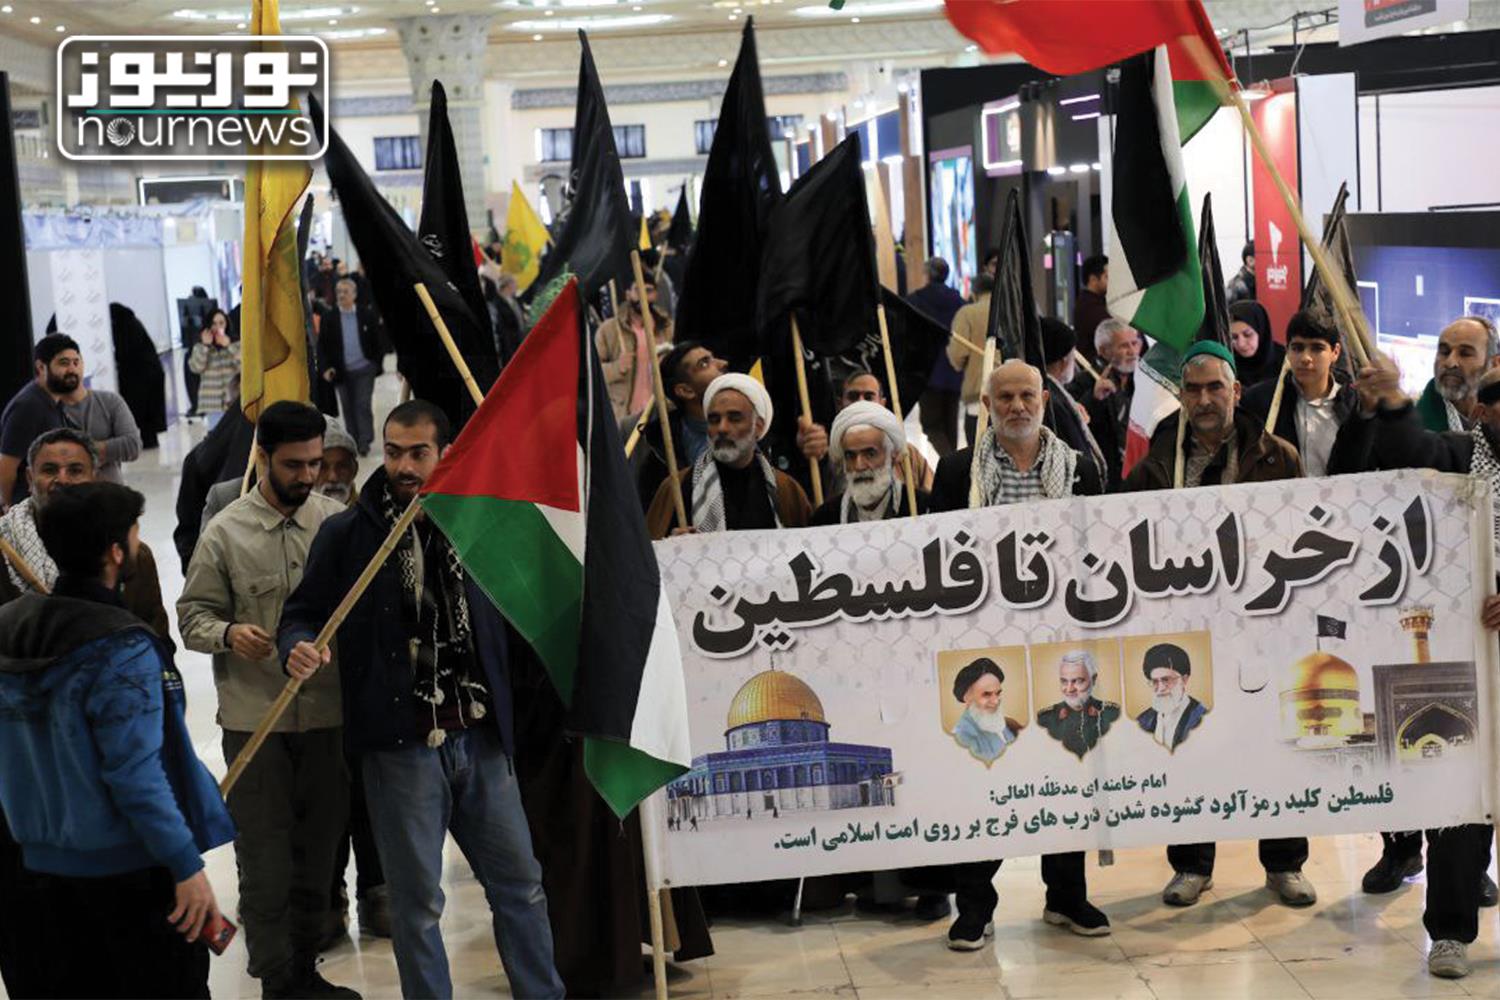 حضور اعضای کمپین از "خراسان تا فلسطین" در نمایشگاه رسانه های ایران